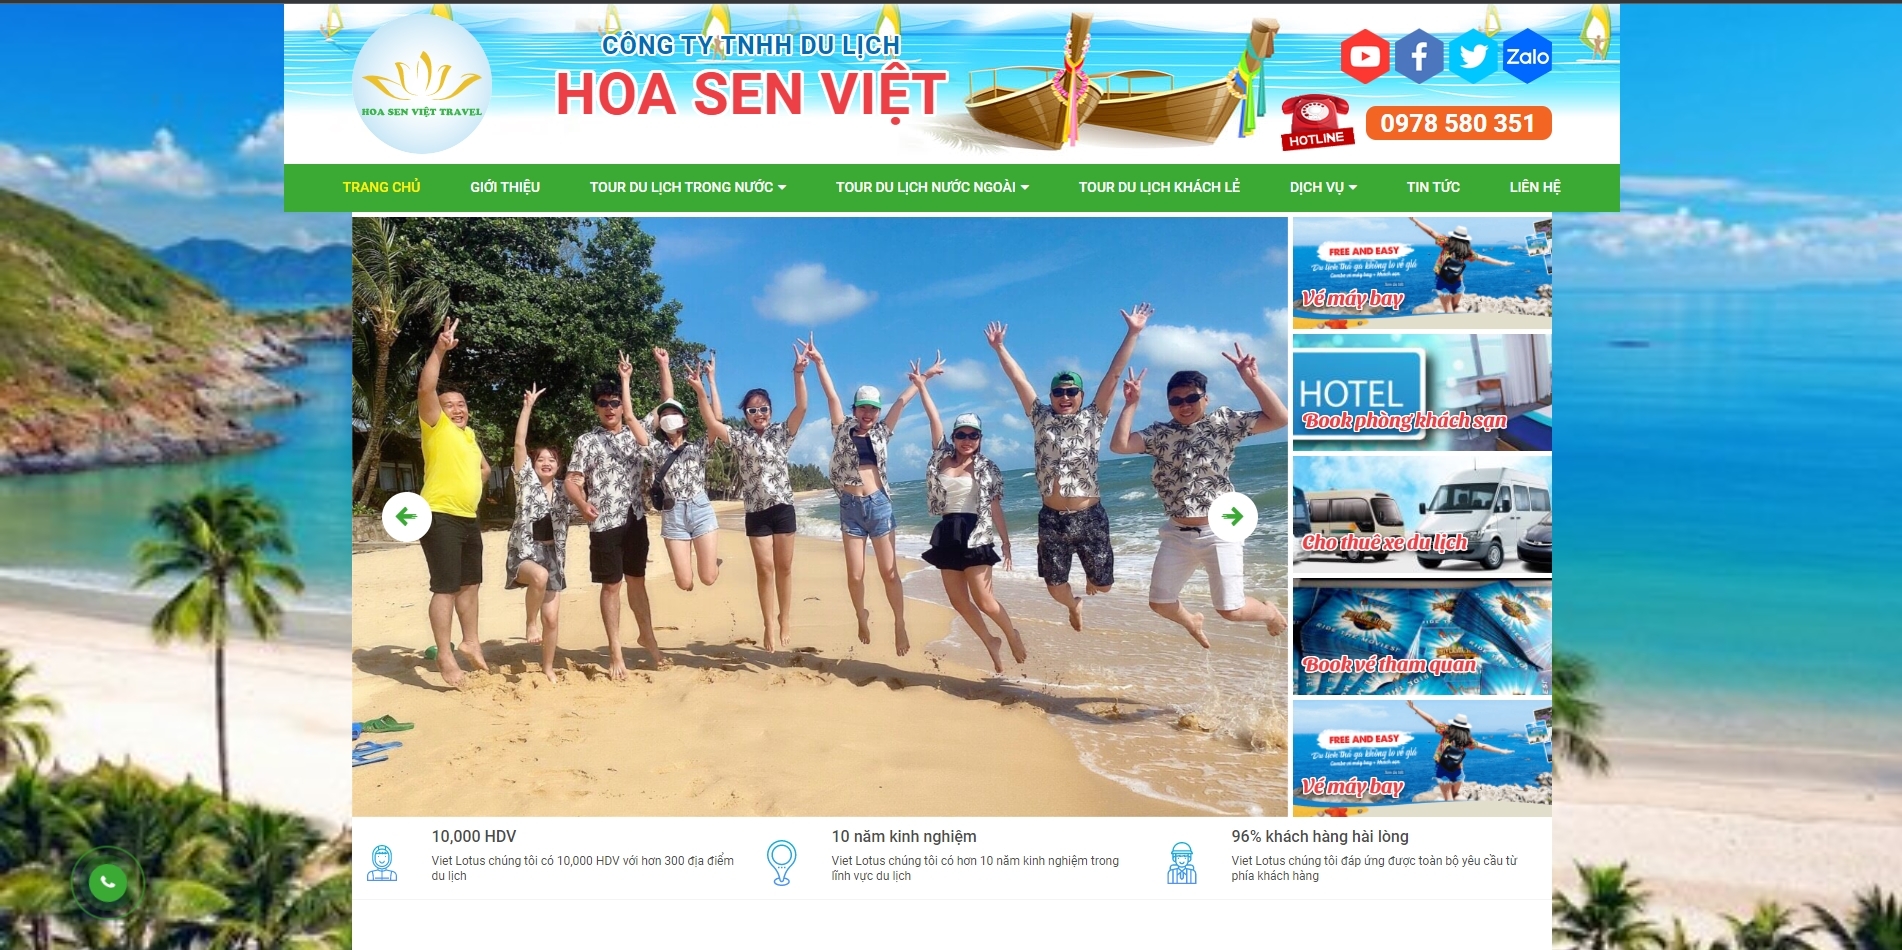 Hoa Sen Viet Travel